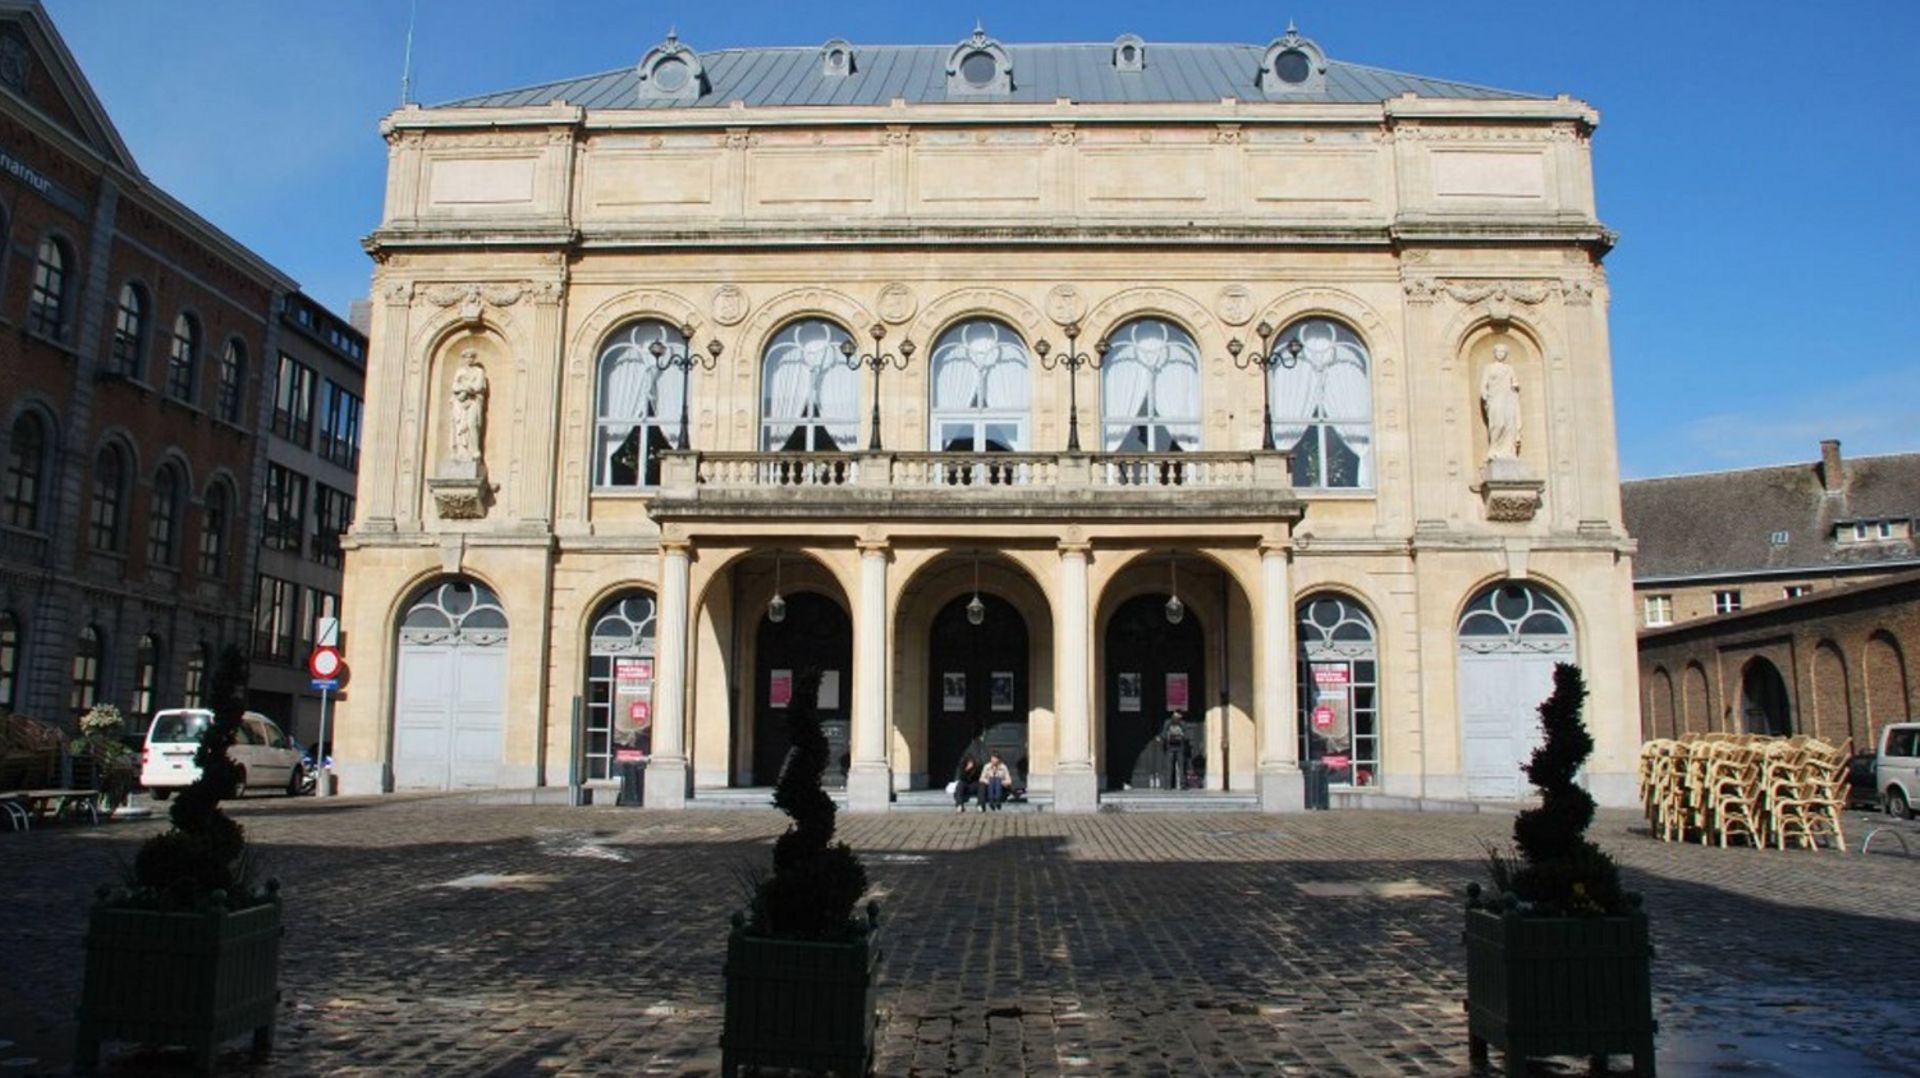 "La police ne pourra fermer les yeux": Le théâtre de Namur suspend les représentations prévues samedi  